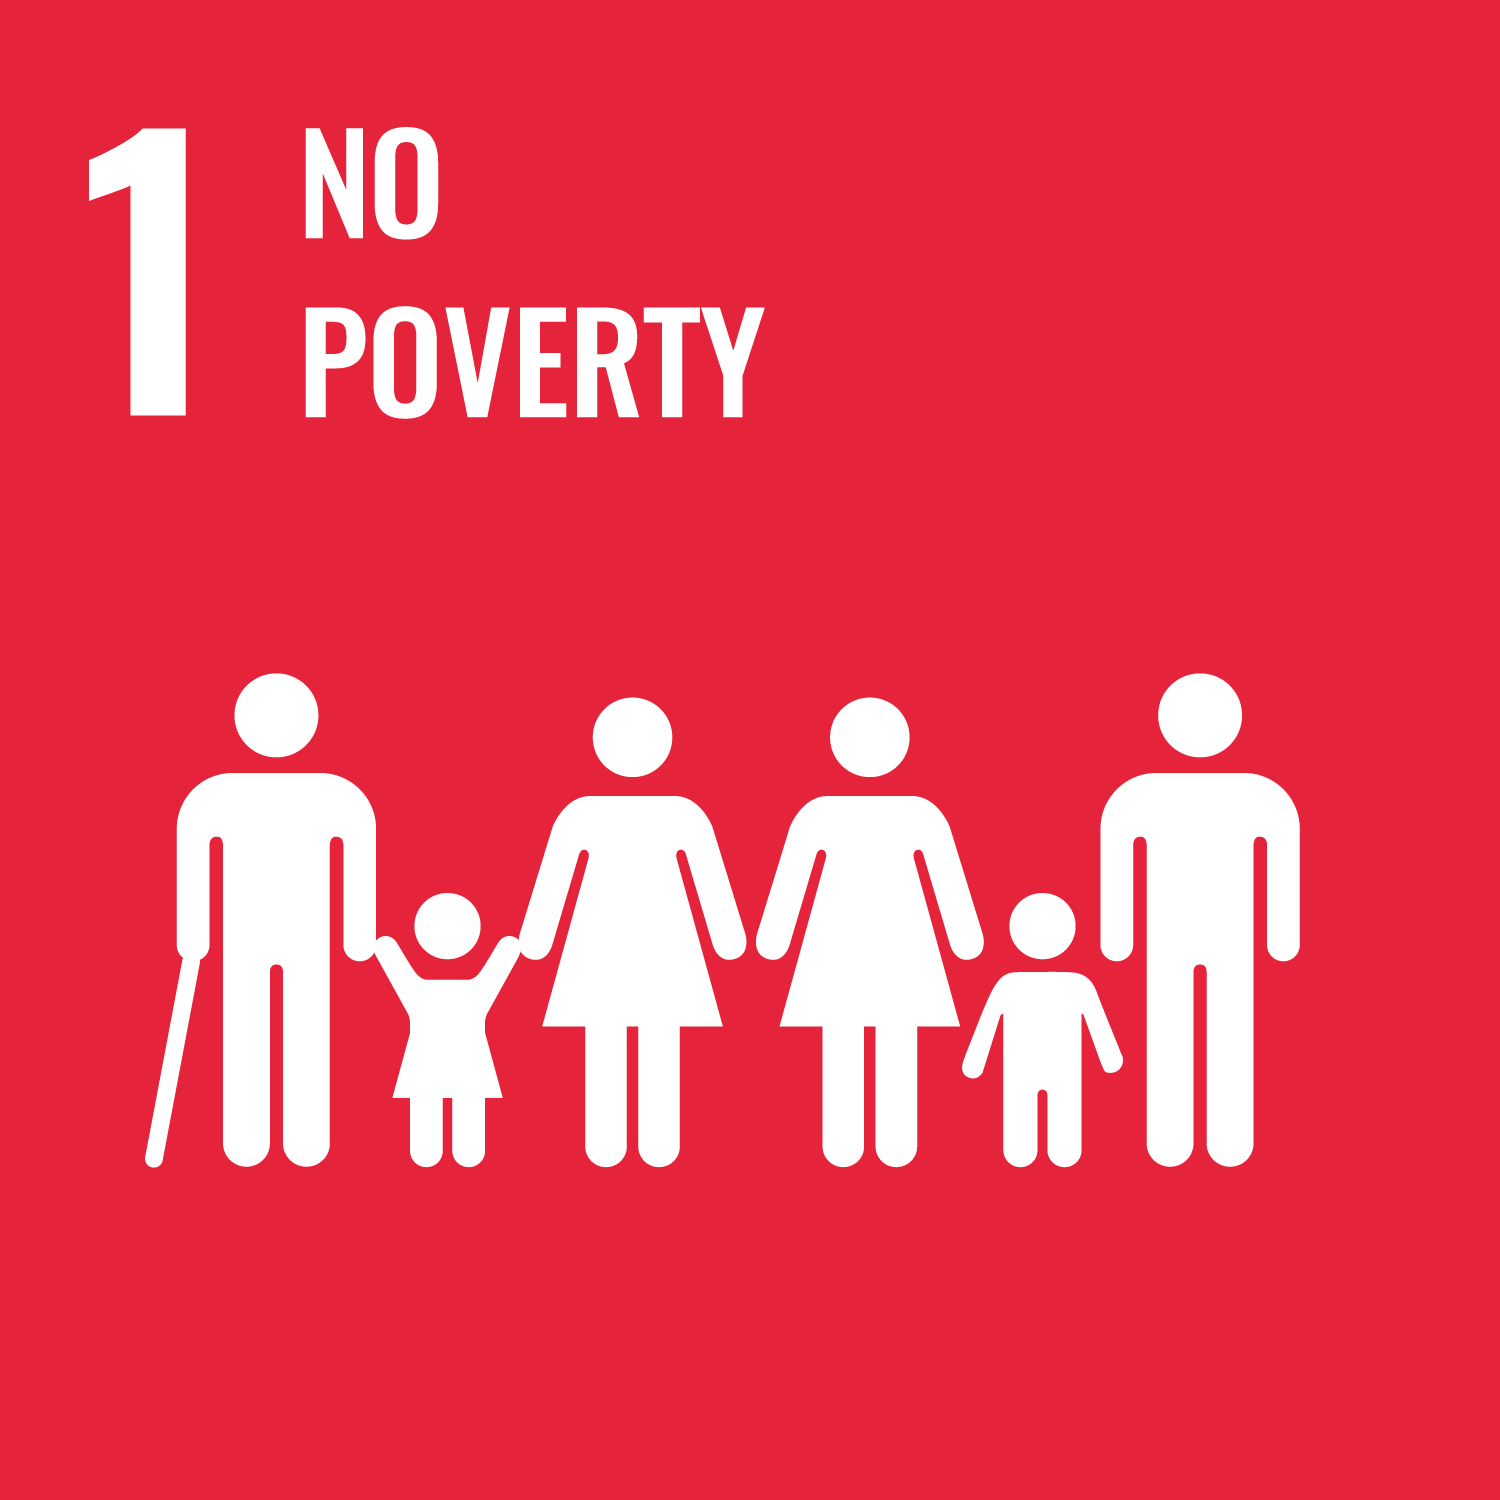 No poverty logo.